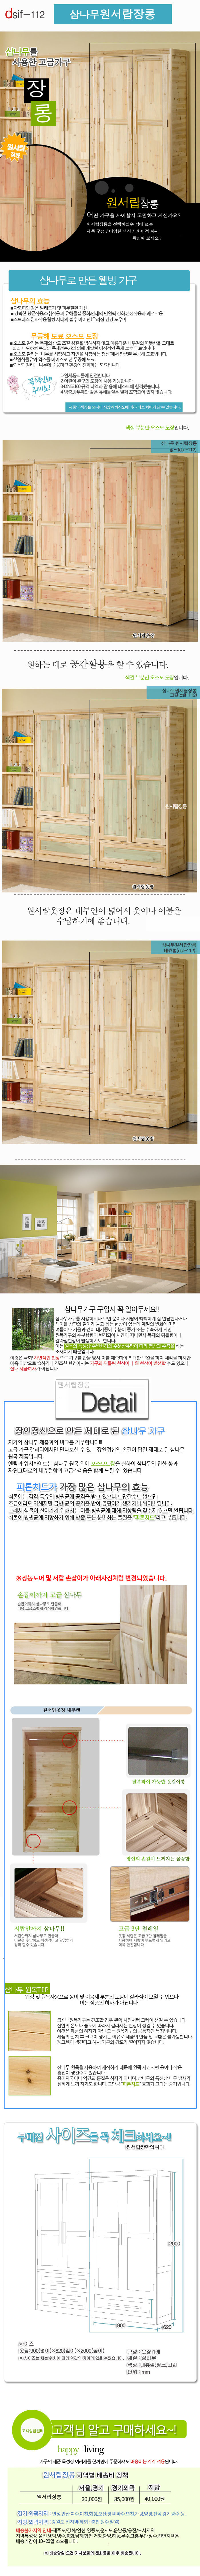 삼나무 원서랍 양문 장롱 900 / 유치원 수납장/착불